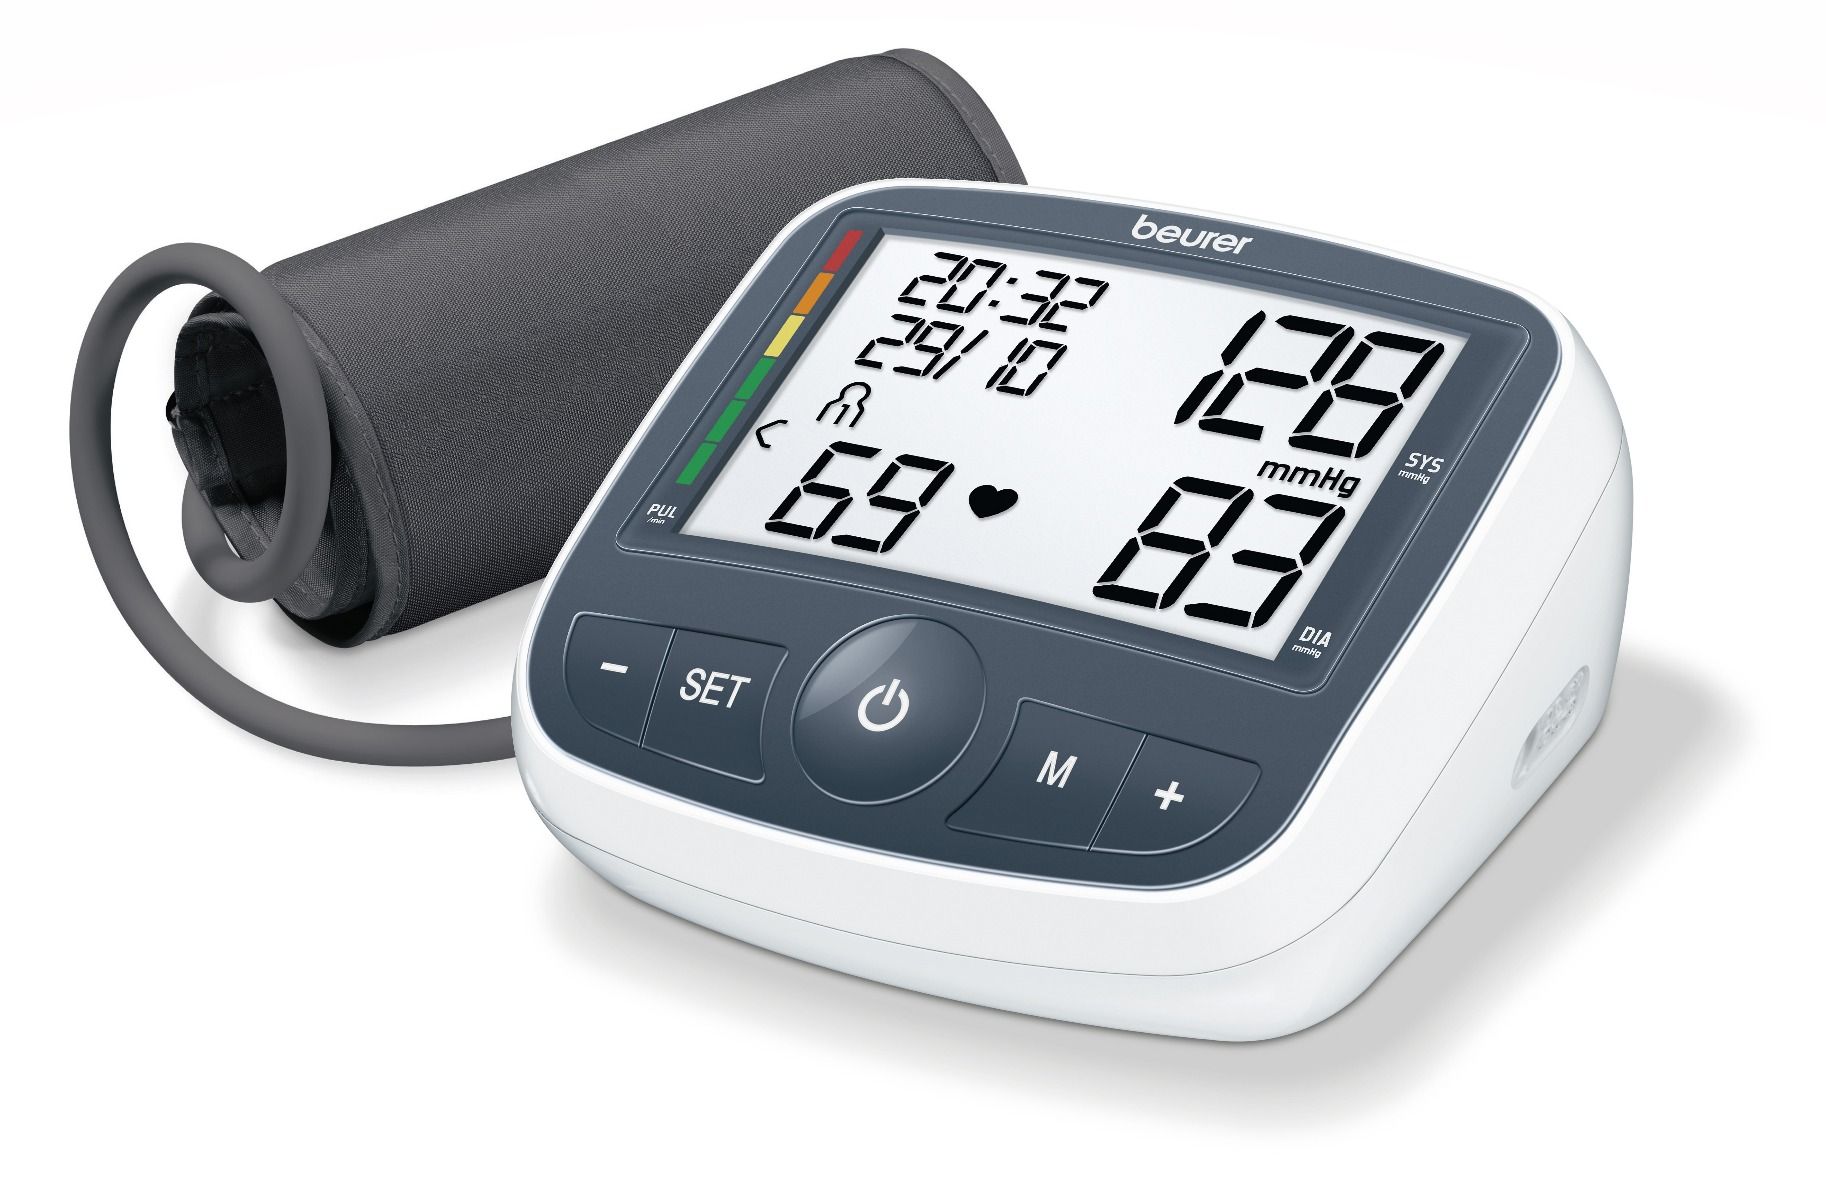 بيورر جهاز قياس الضغط، قياس الضغط عن طريق المعصم مع وجود ذاكرتين لحفظ 60 نتيجة لكل منها - اظهار قيم ضغط الدم ومعدل النبض - BM40